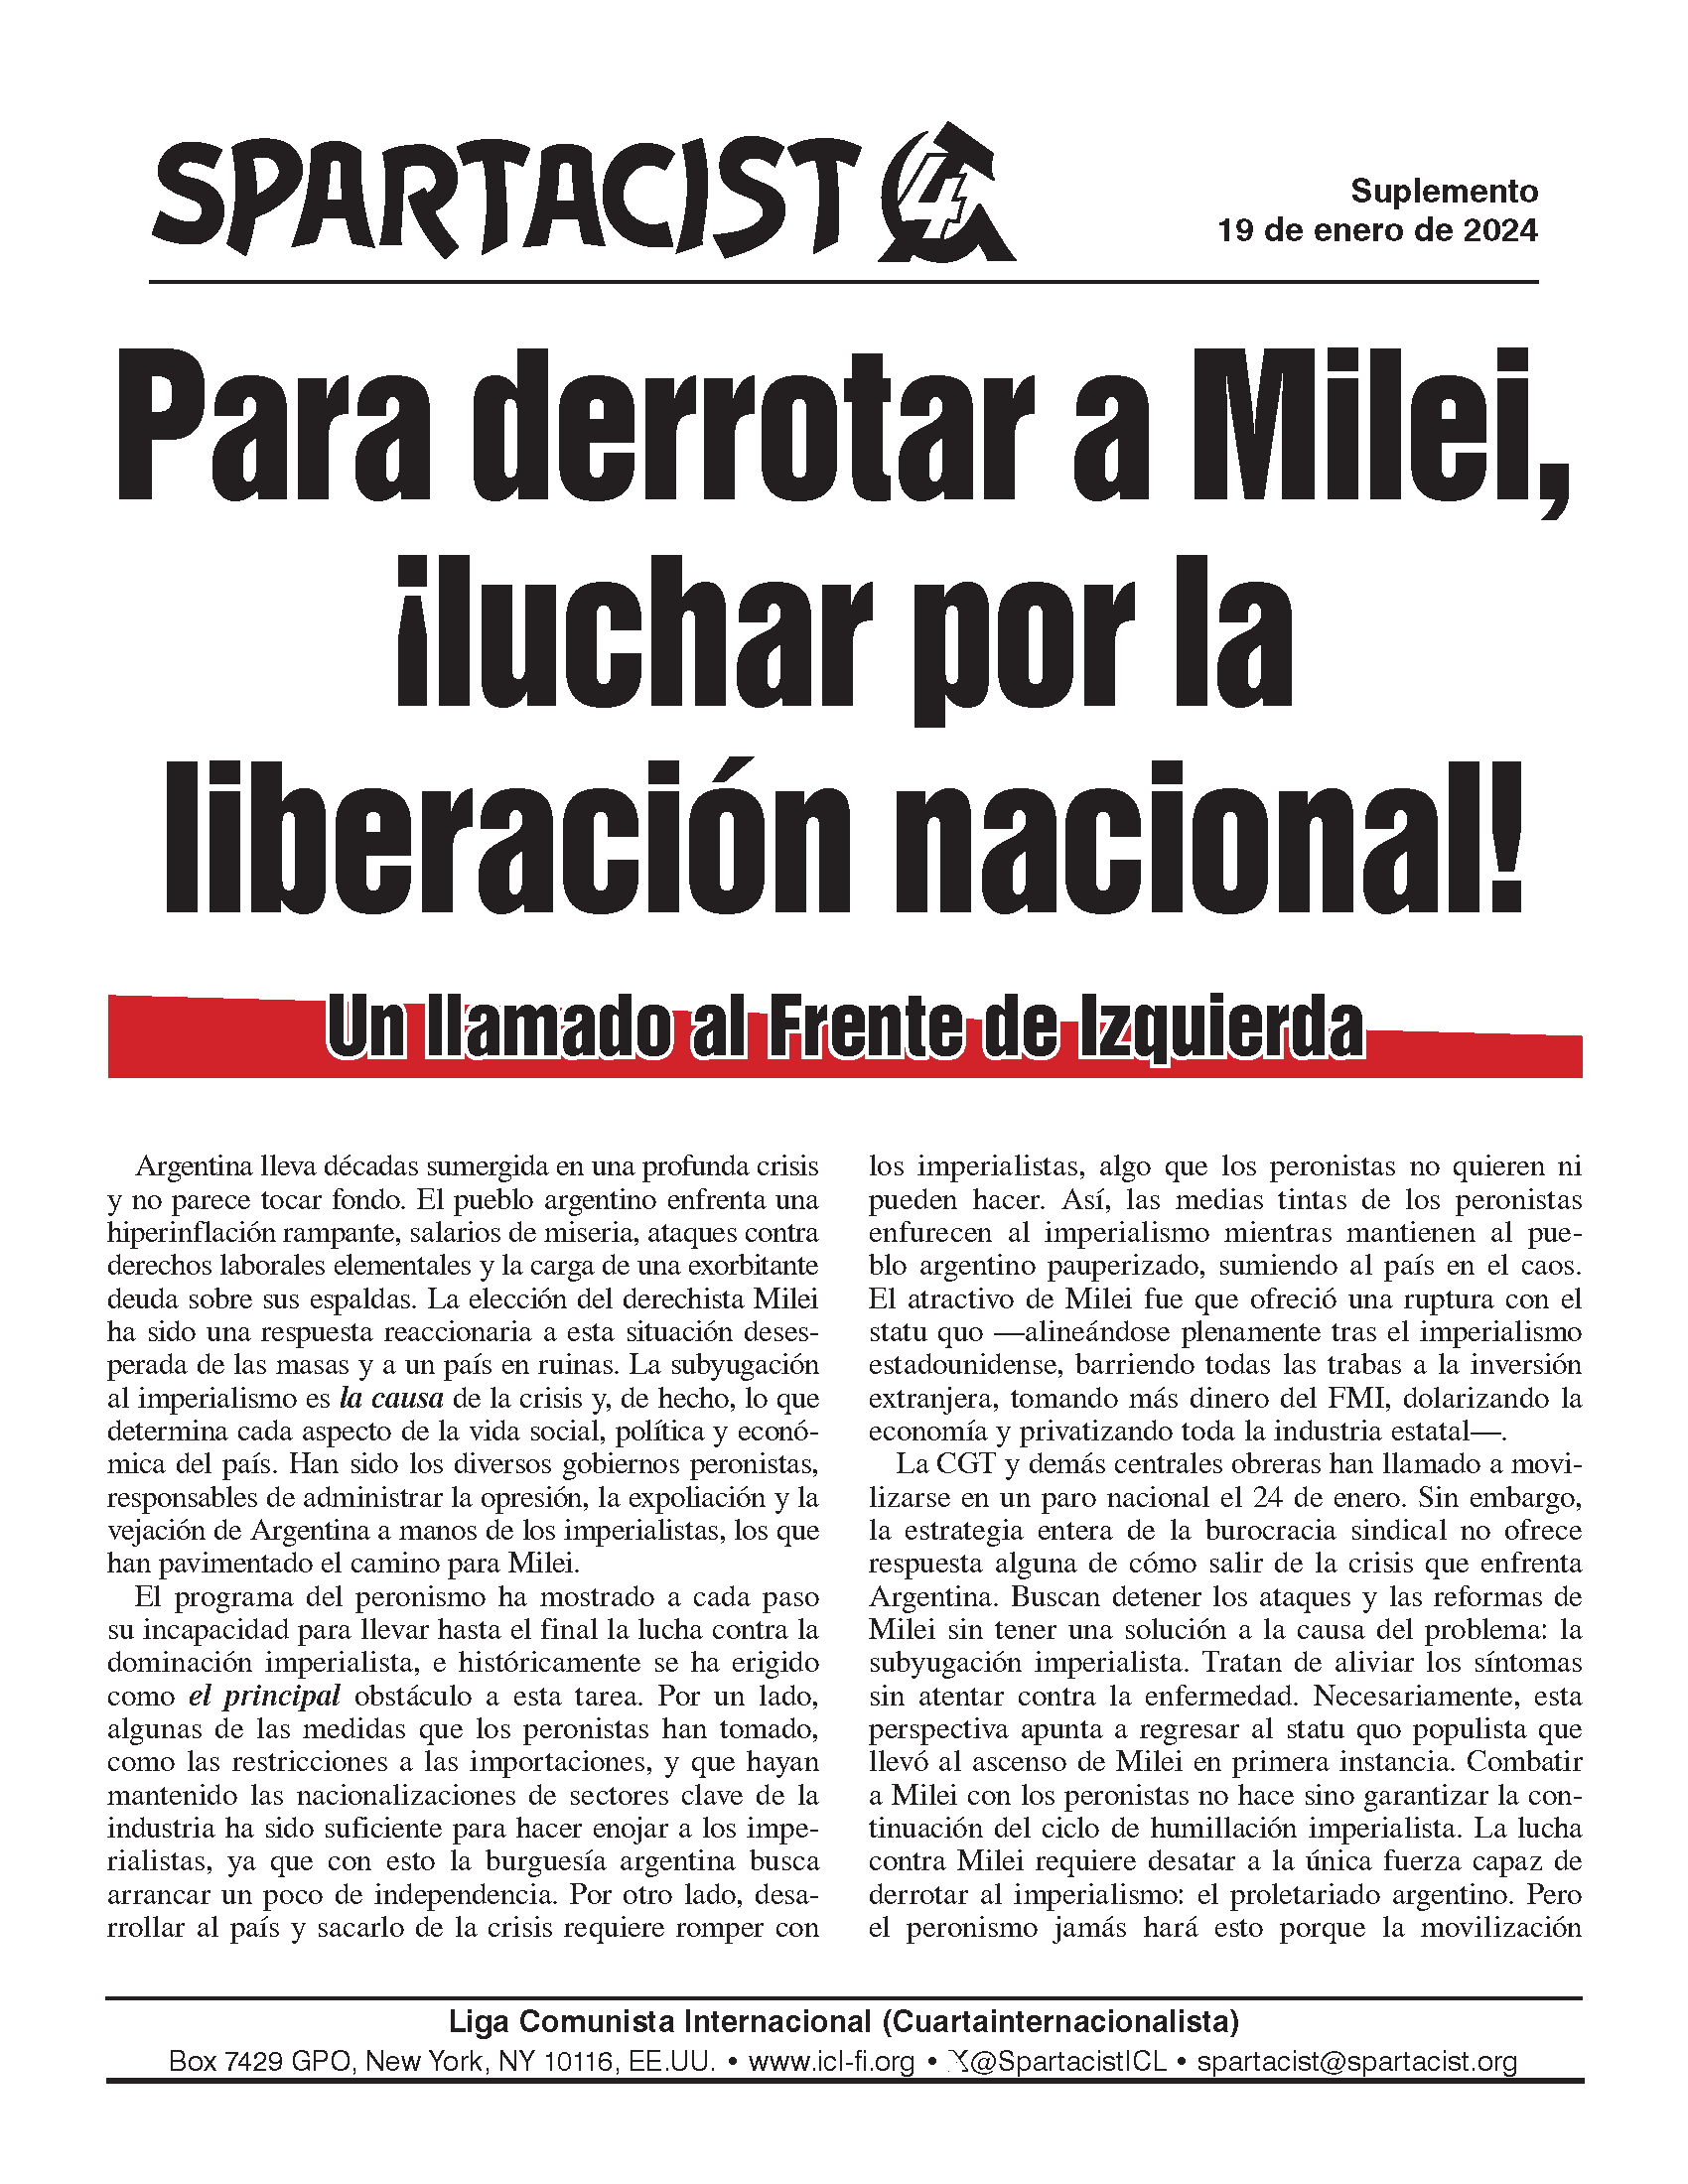 Spartacist (edición en español) Extra  |  19. Januar 2024